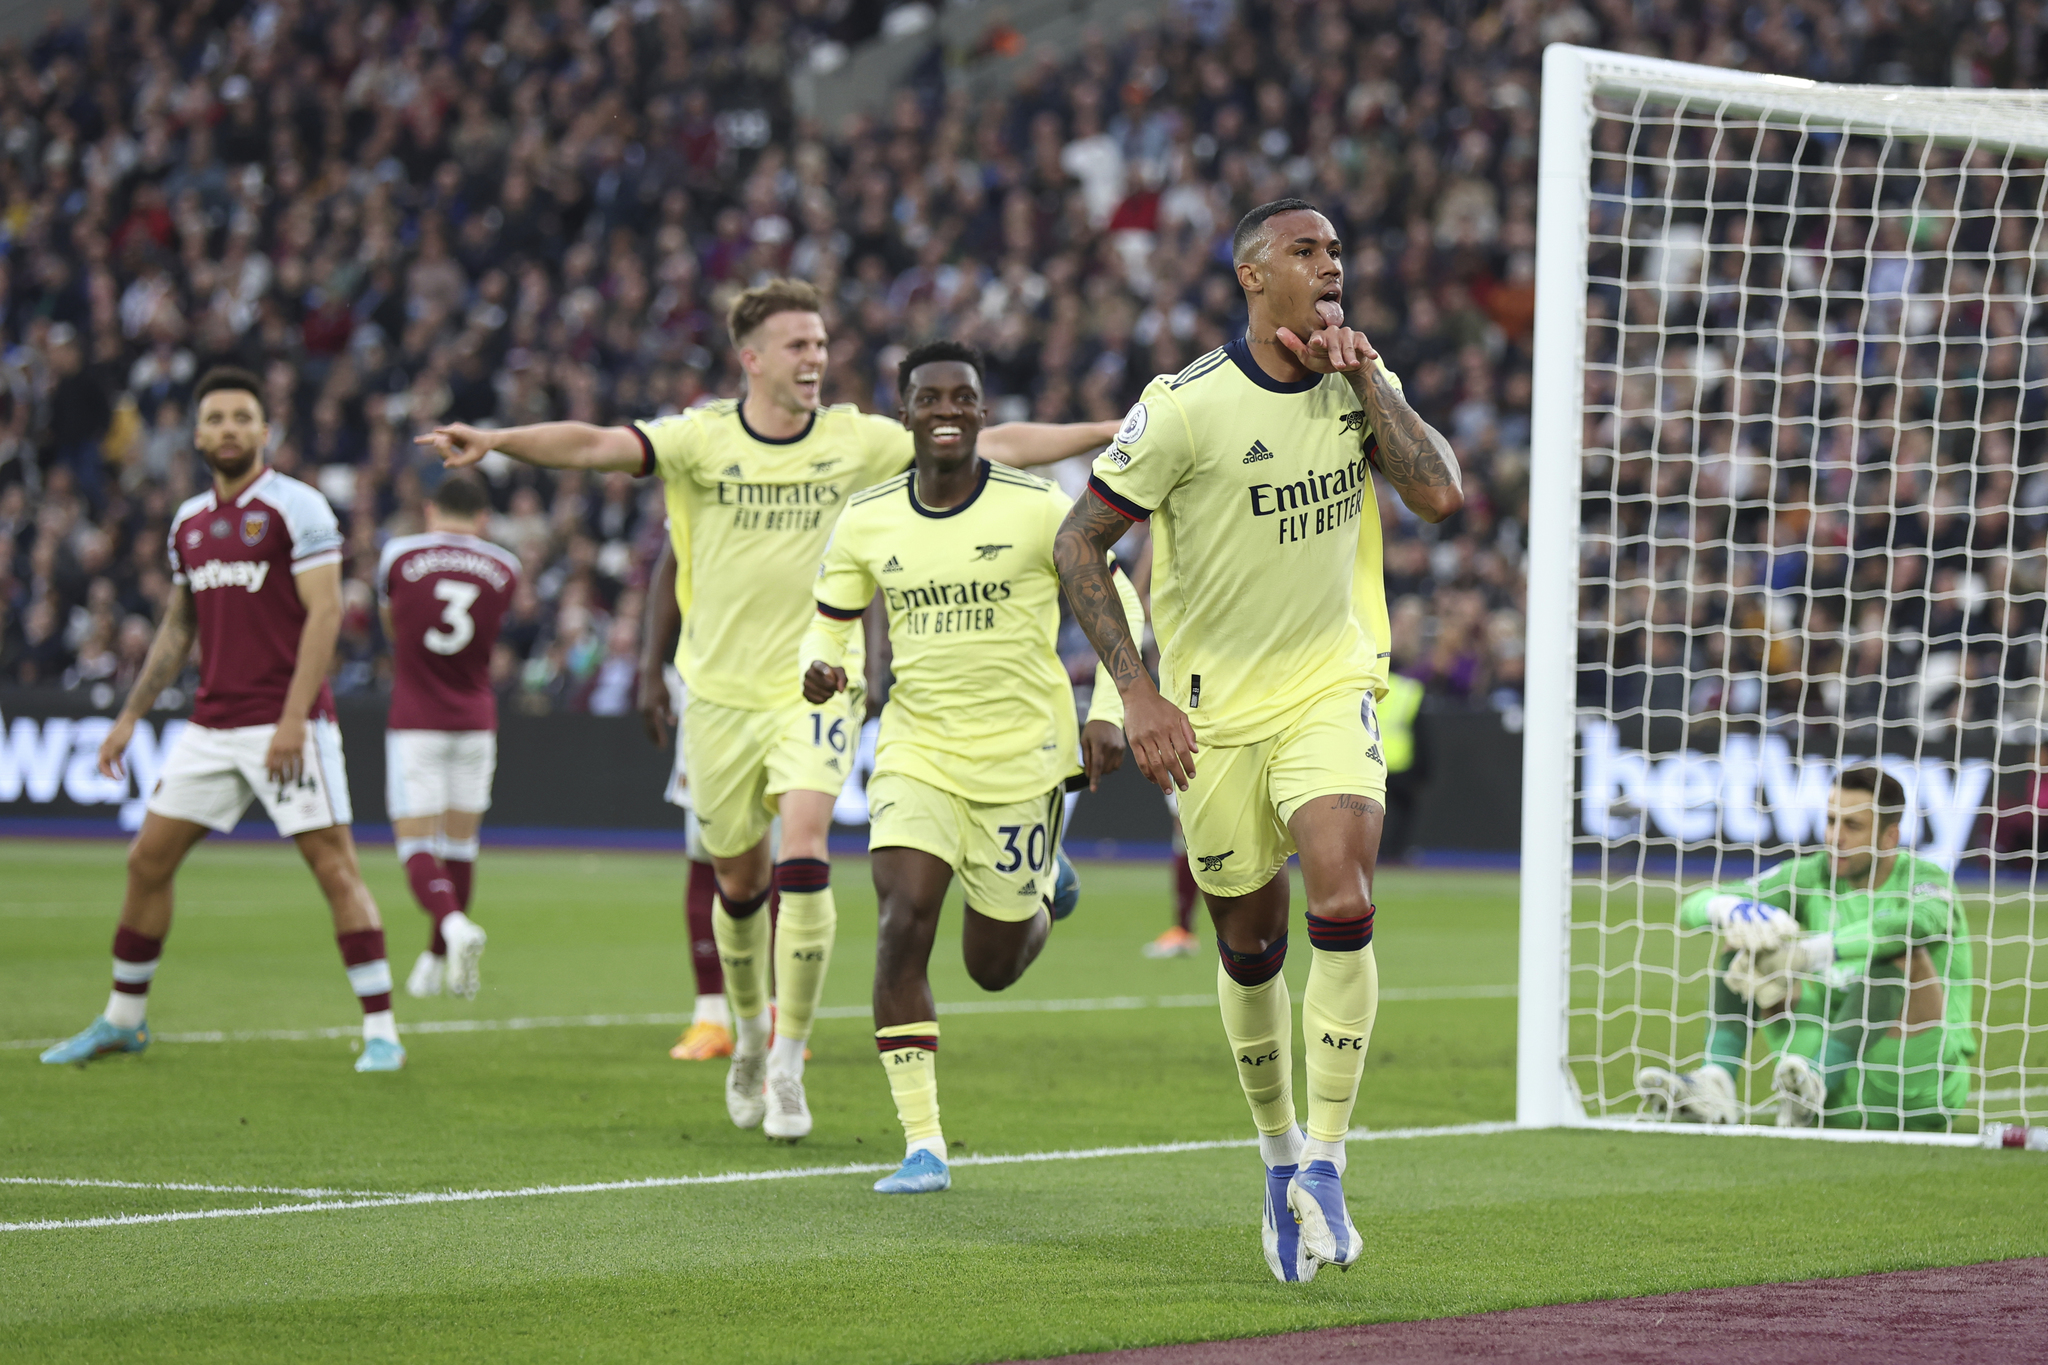 Arsenal's Gabriel celebrates after scoring